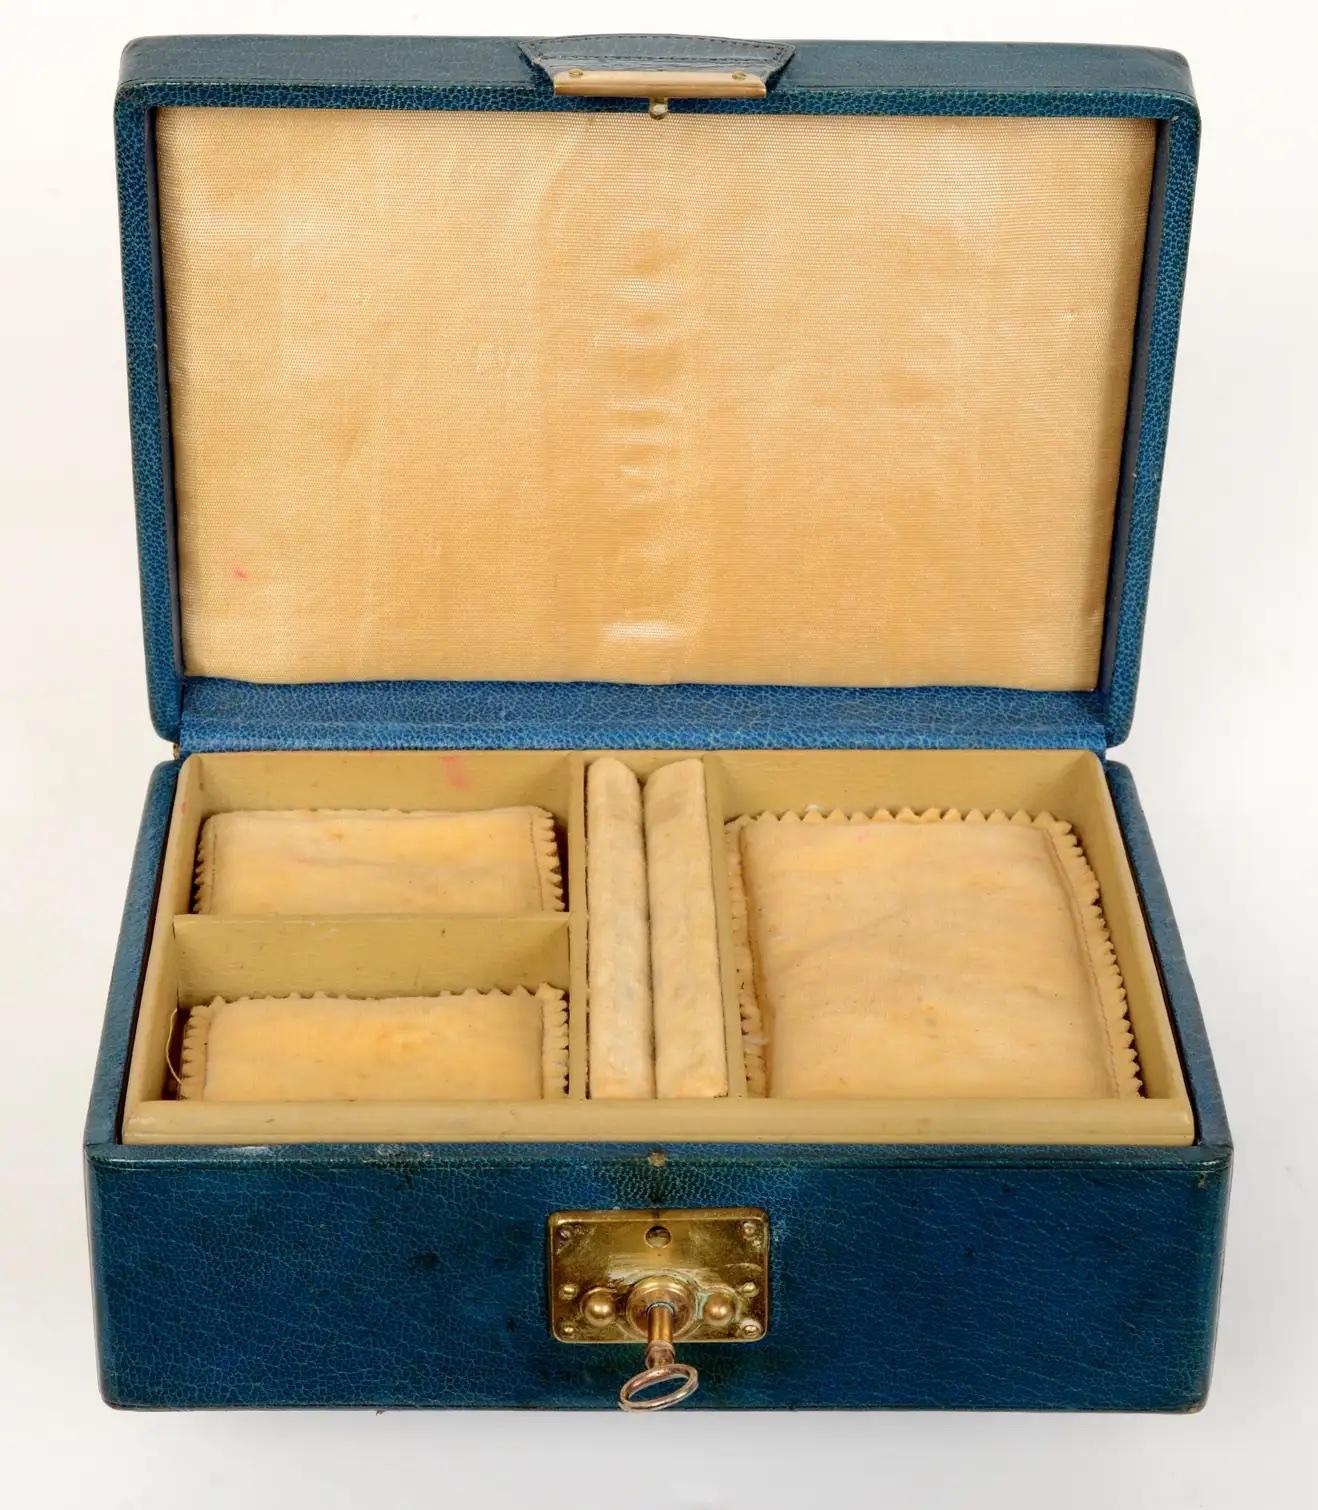 Abercrombie &New New York, Vintage, boîte à bijoux en cuir de veau lisse bleu patiné, avec fermeture à clé, c1950. La poignée d'origine se trouve sur la partie supérieure. La boîte a une doublure en daim et un plateau amovible. Le plateau comporte